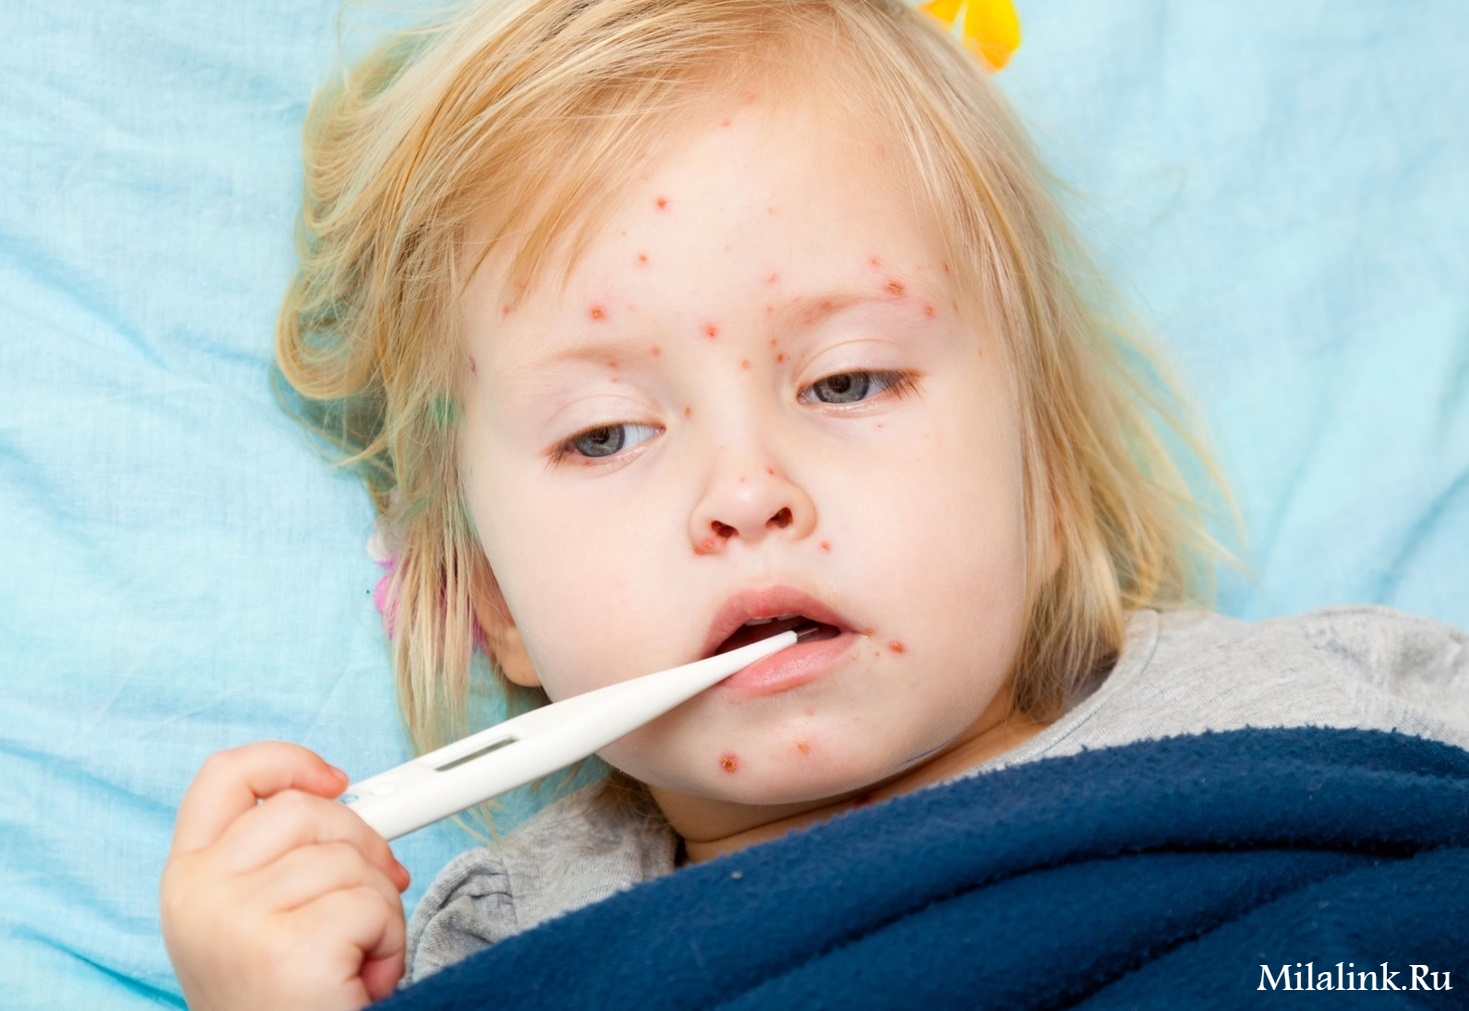 Опасные инфекционные заболевания у ребенка